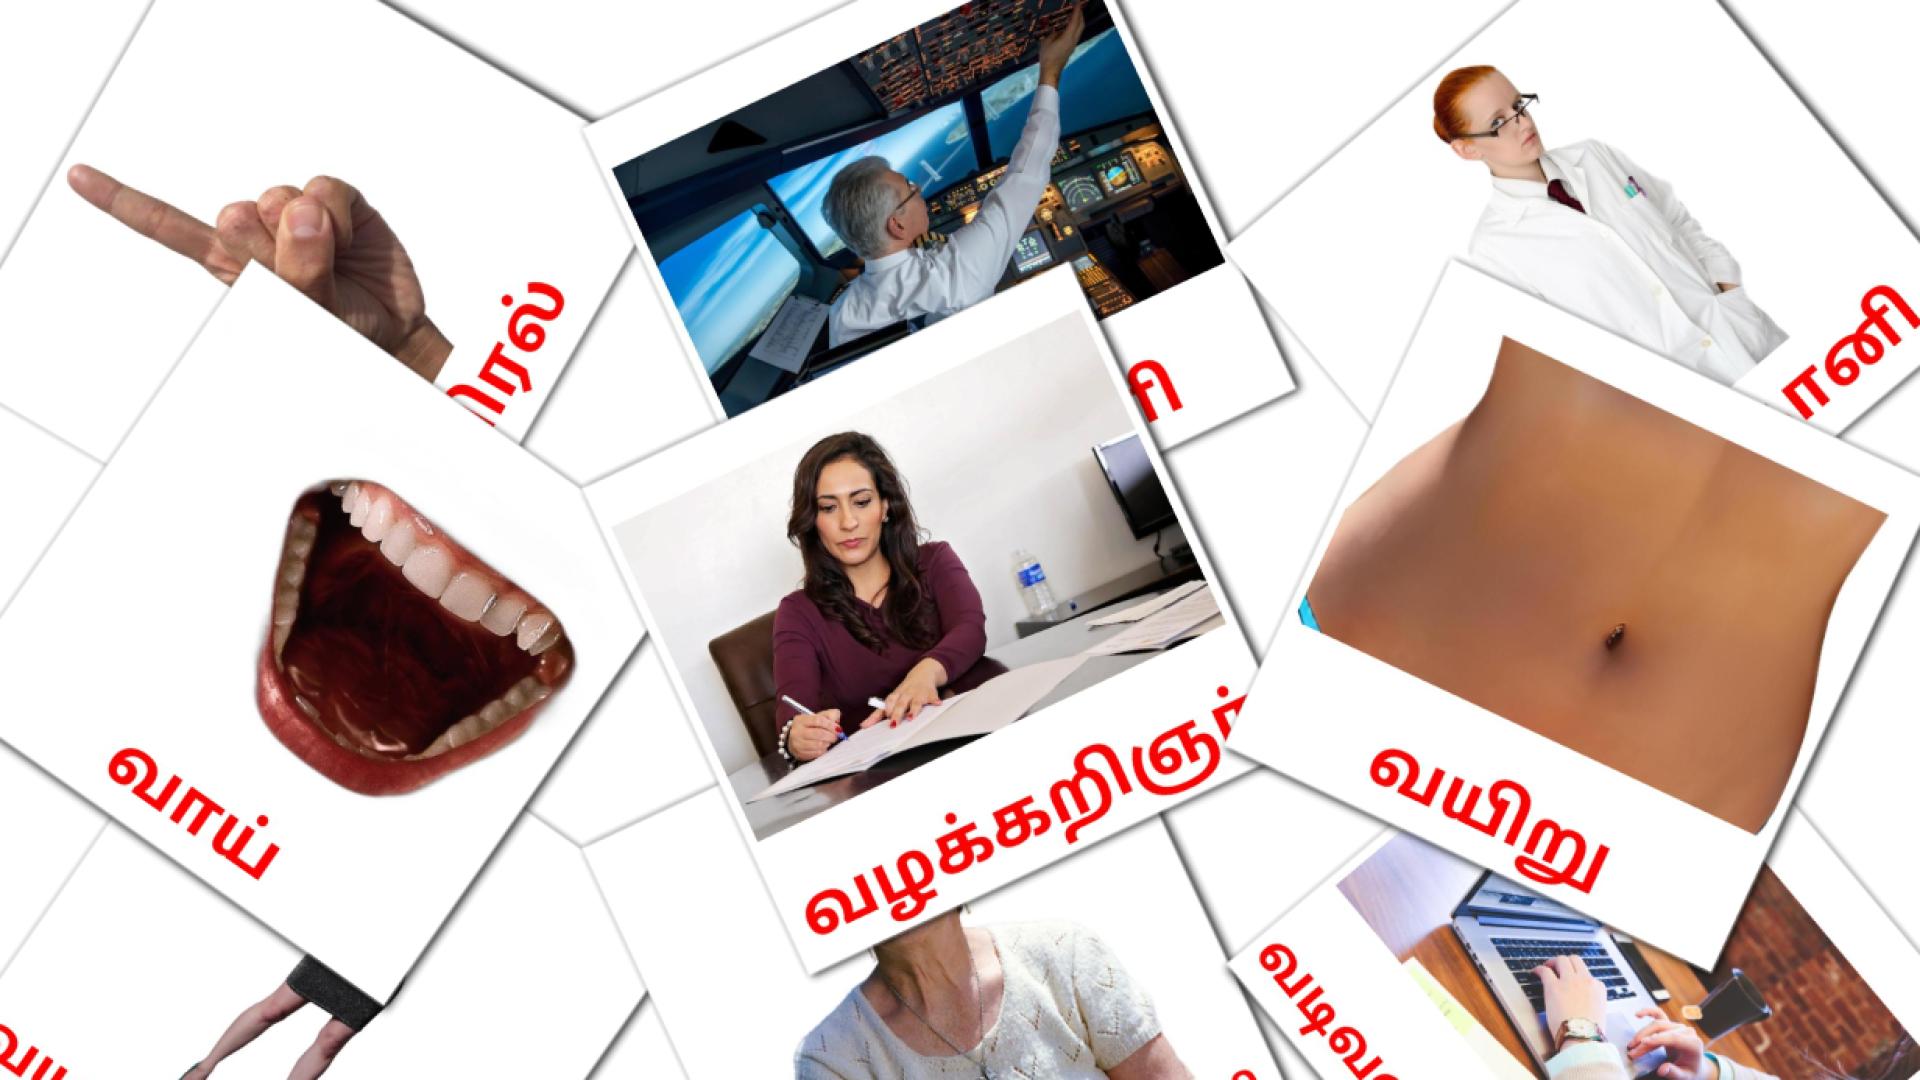 tamil tarjetas de vocabulario en மக்கள்